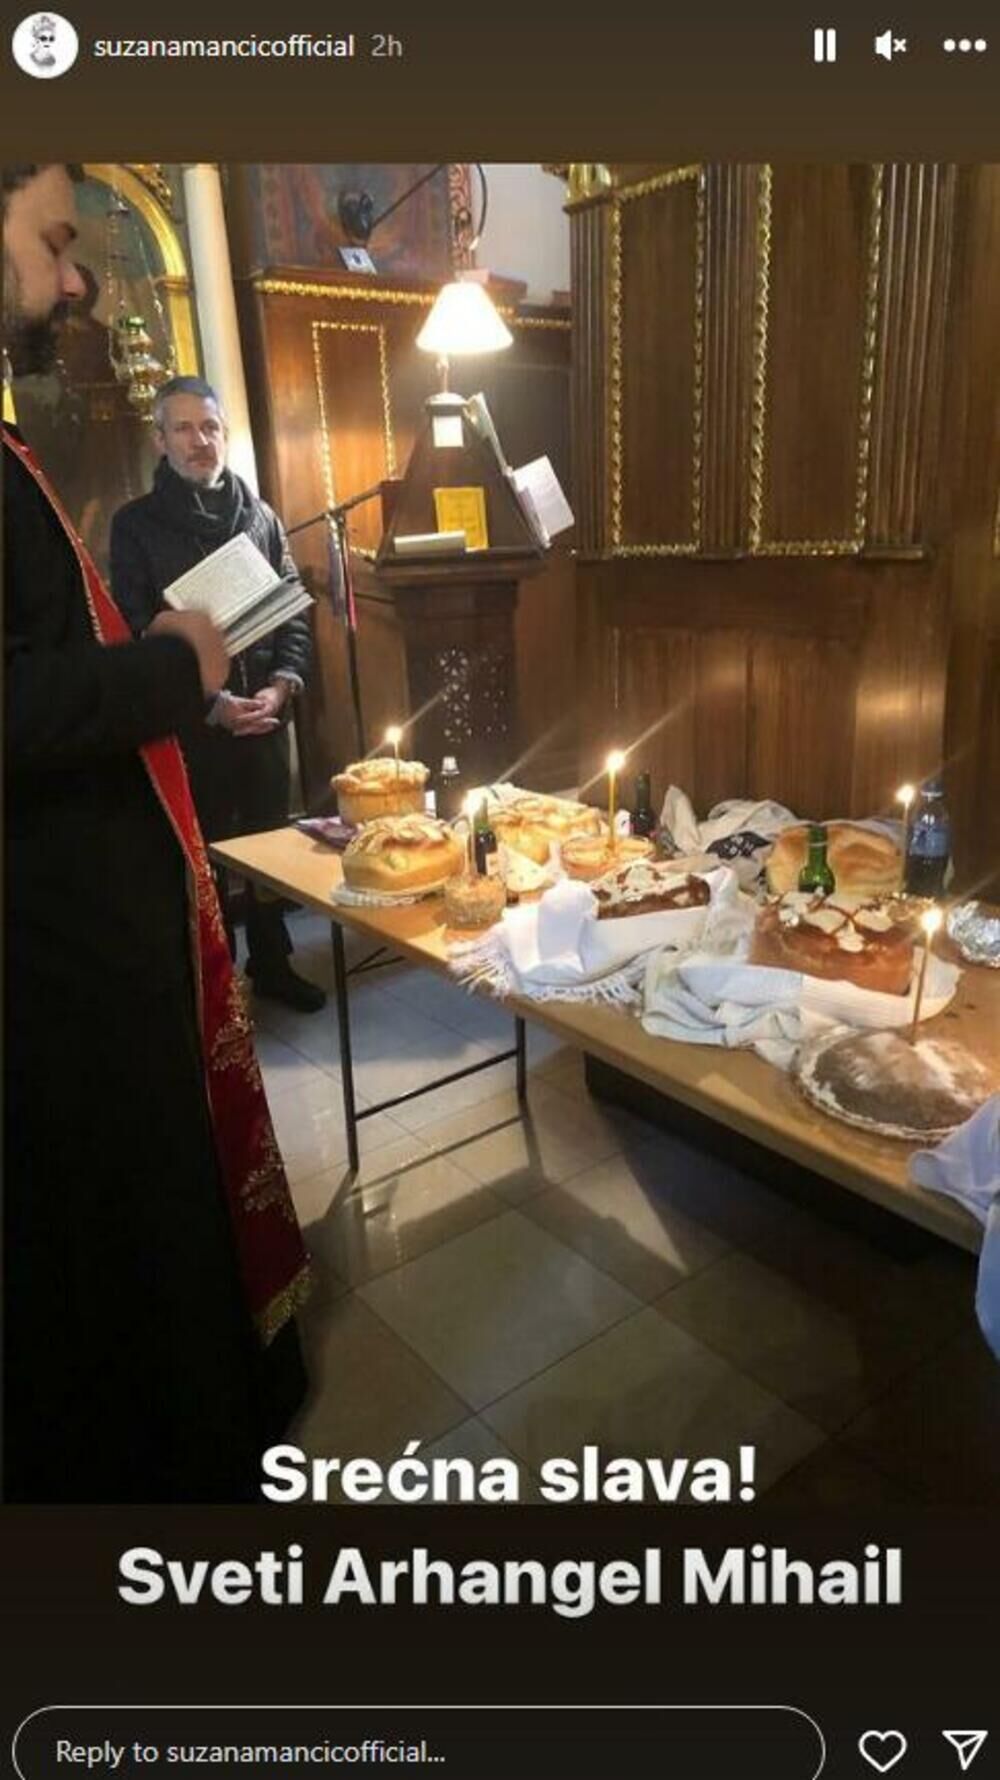 Voditeljka izuzetno poštuje običaje pa je svoj slavski kolač i žito odnela u crkvu